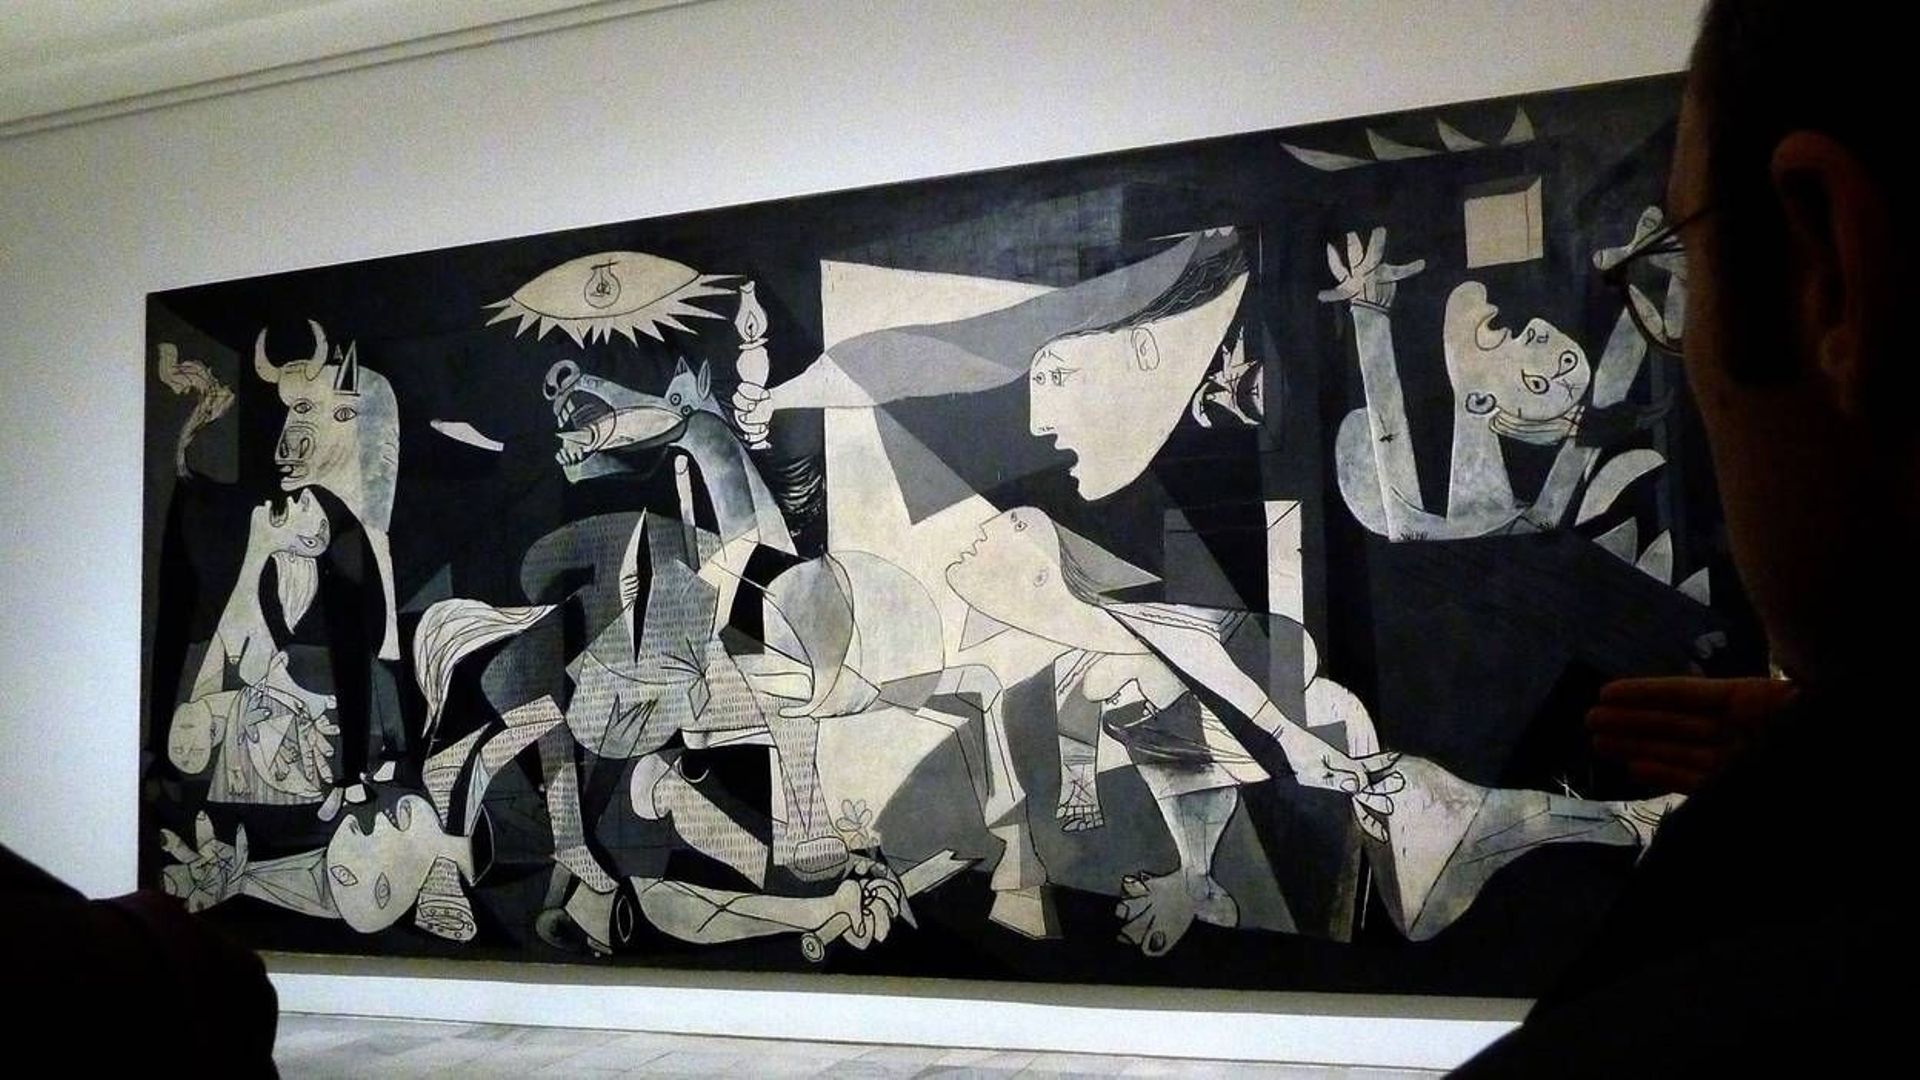 Picasso, "Guernica"